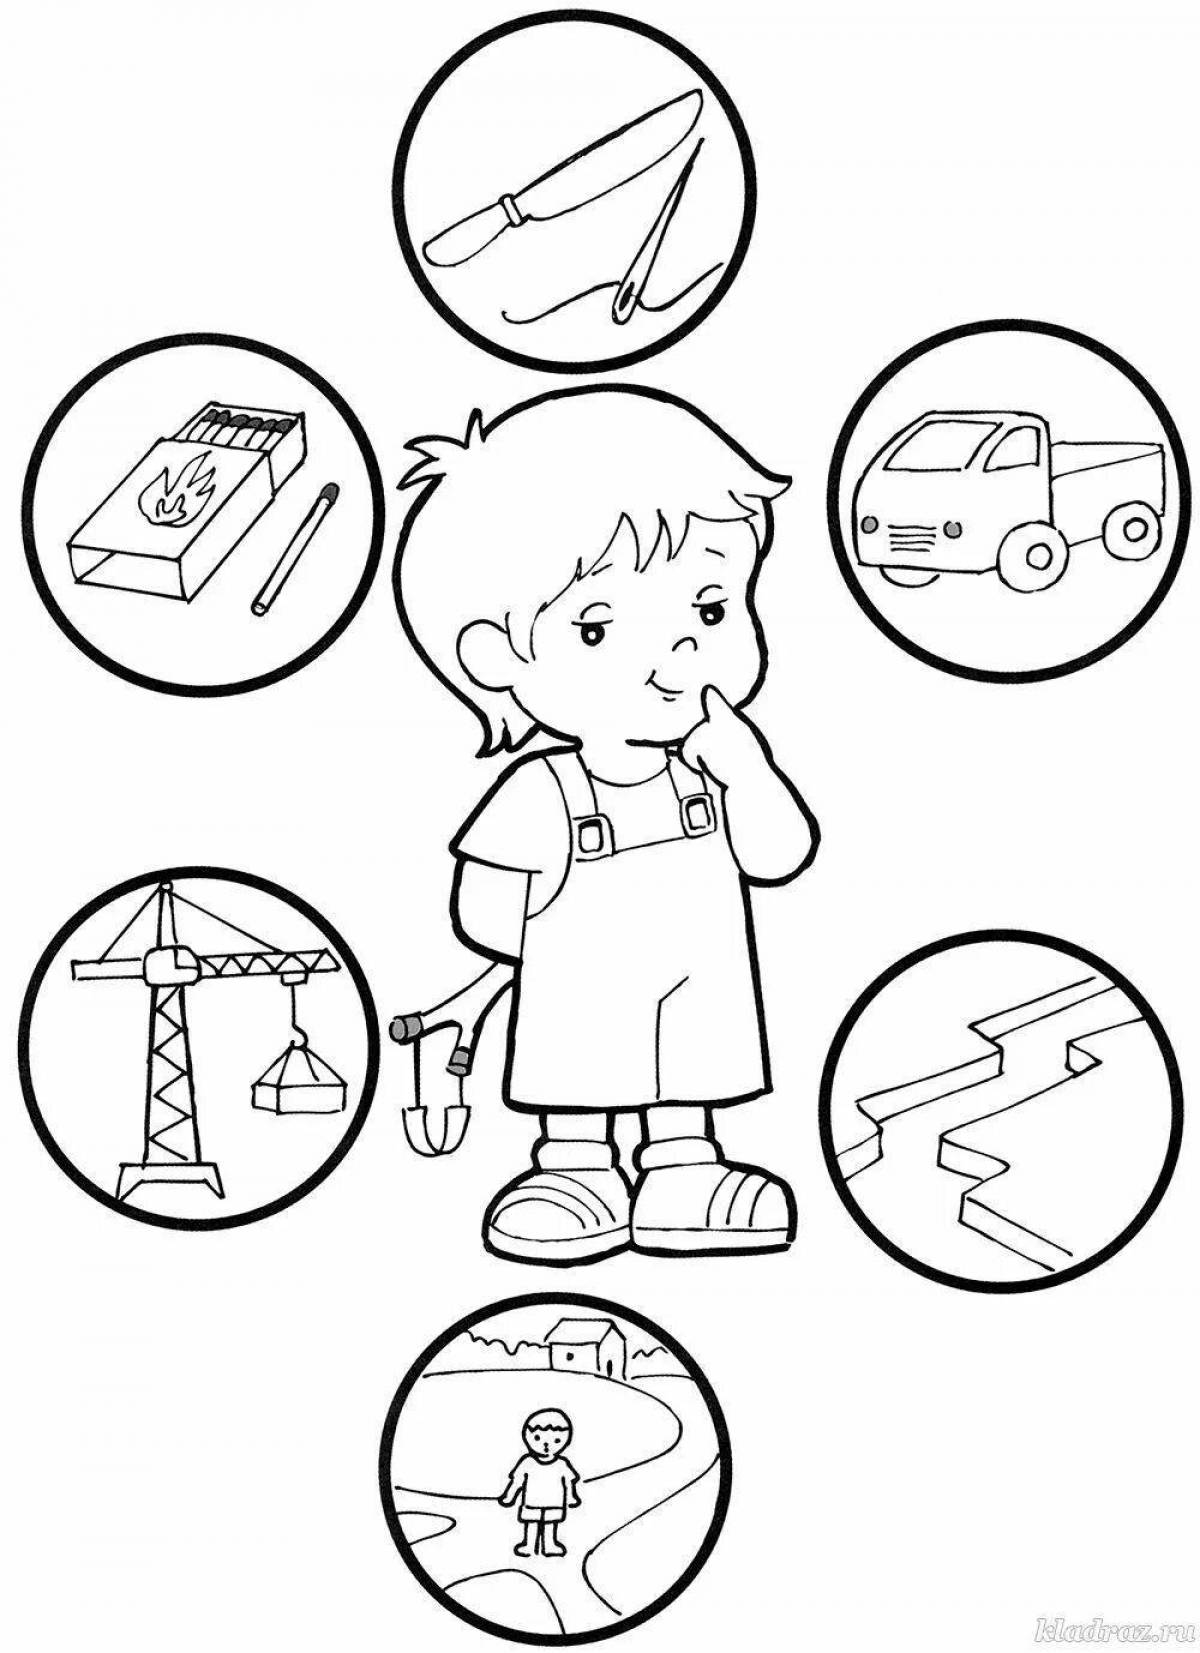 On ABC Preschool Safety #15